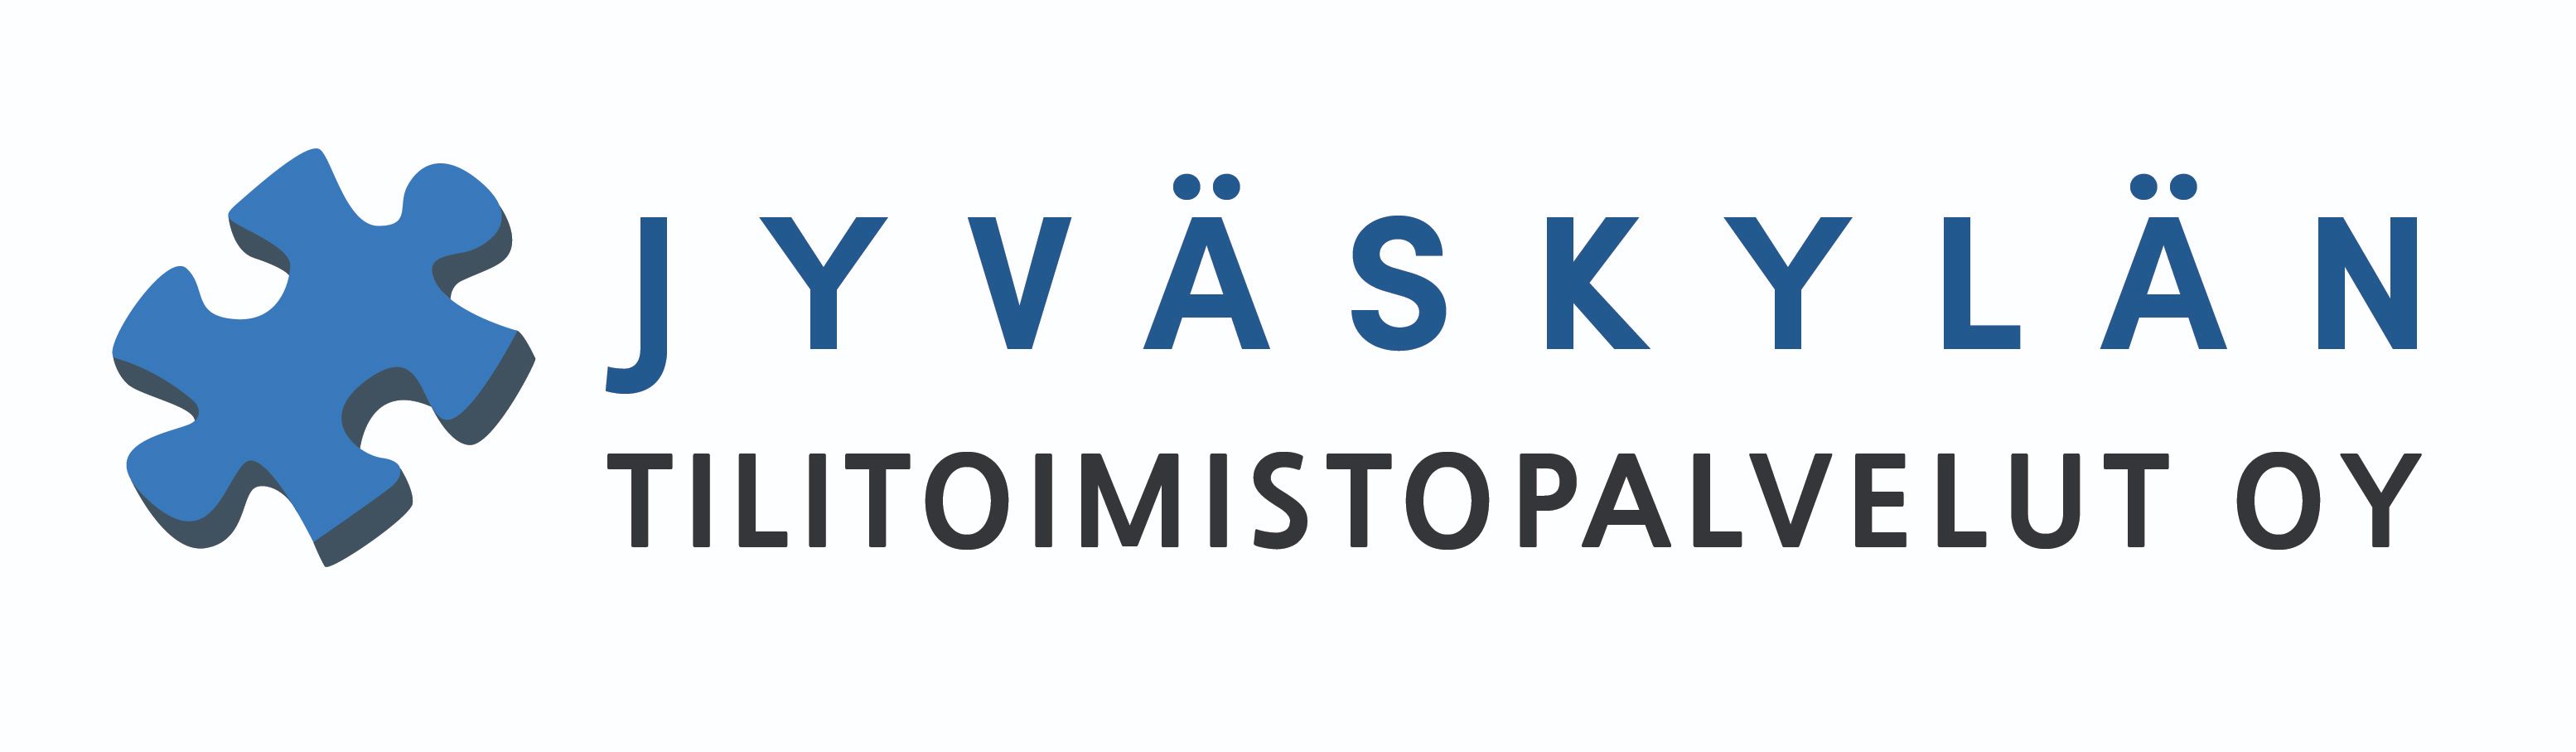 Jyväskylän Tilitoimistopalvelut Oy